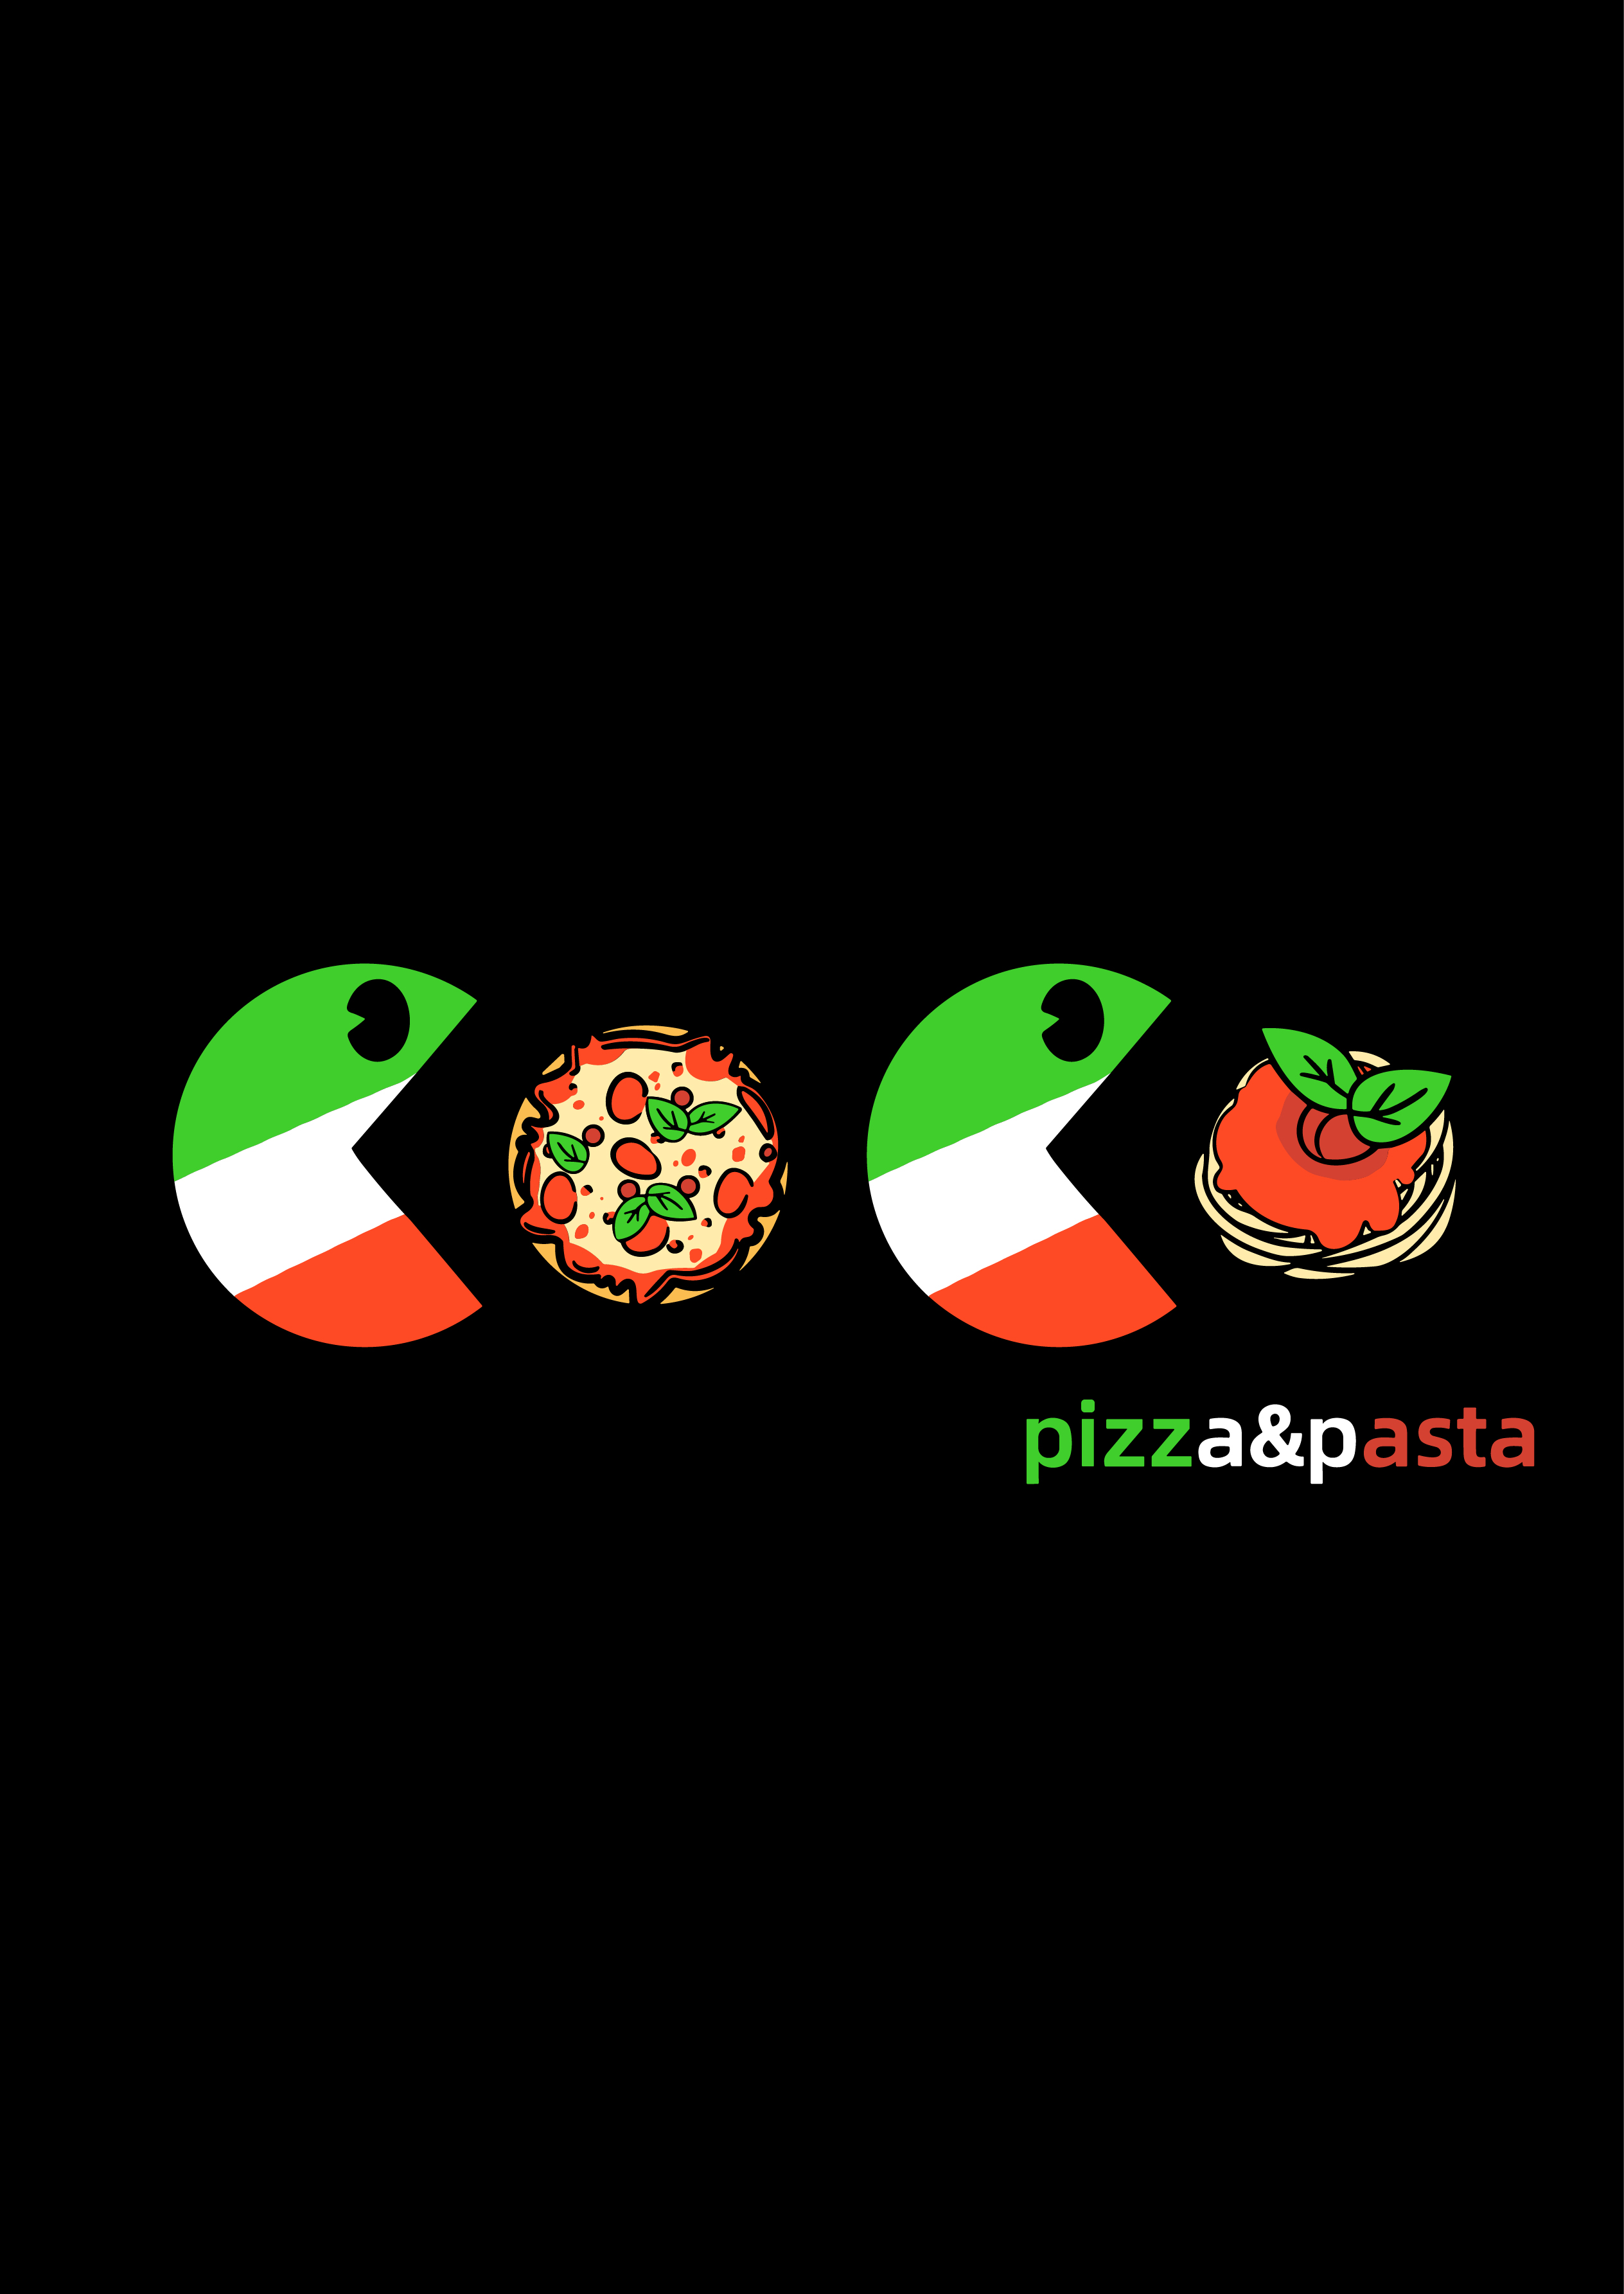 Coco pizza&pasta